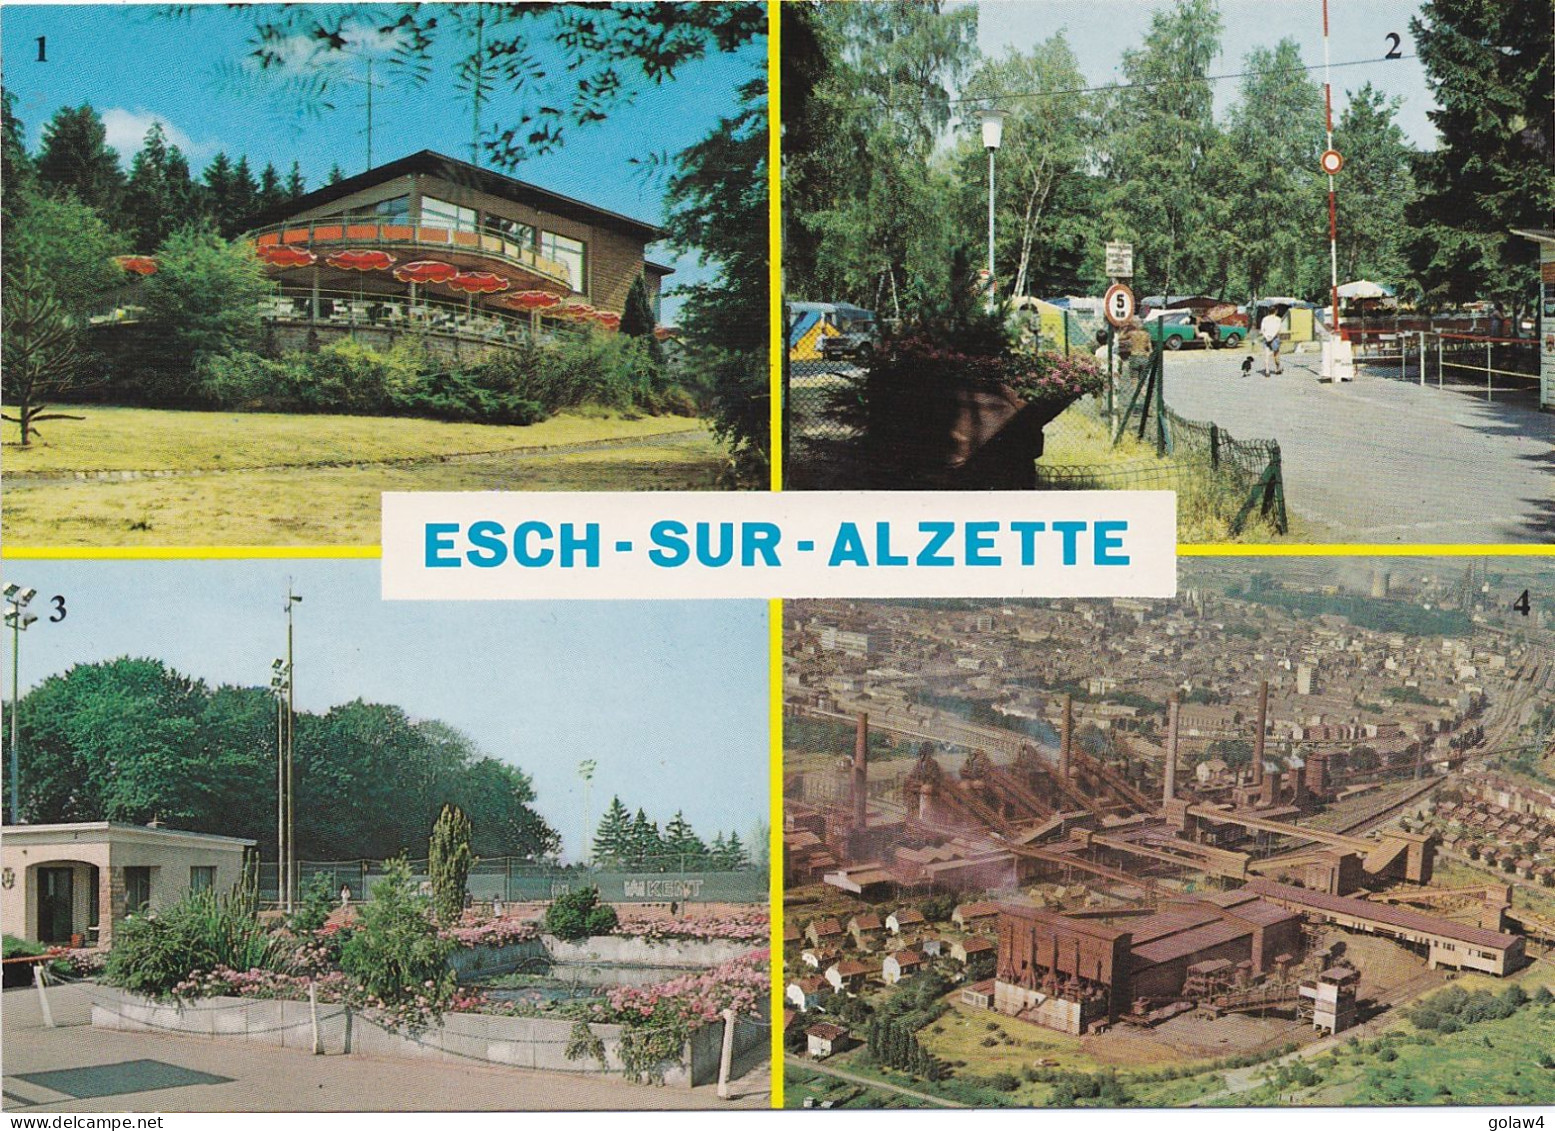 36567# ESCH SUR ALZETTE PAVILLON GALGENBIERG CAMPING JARDINS EDUCATIFS USINES SIDERURUGIQUE - Esch-sur-Alzette